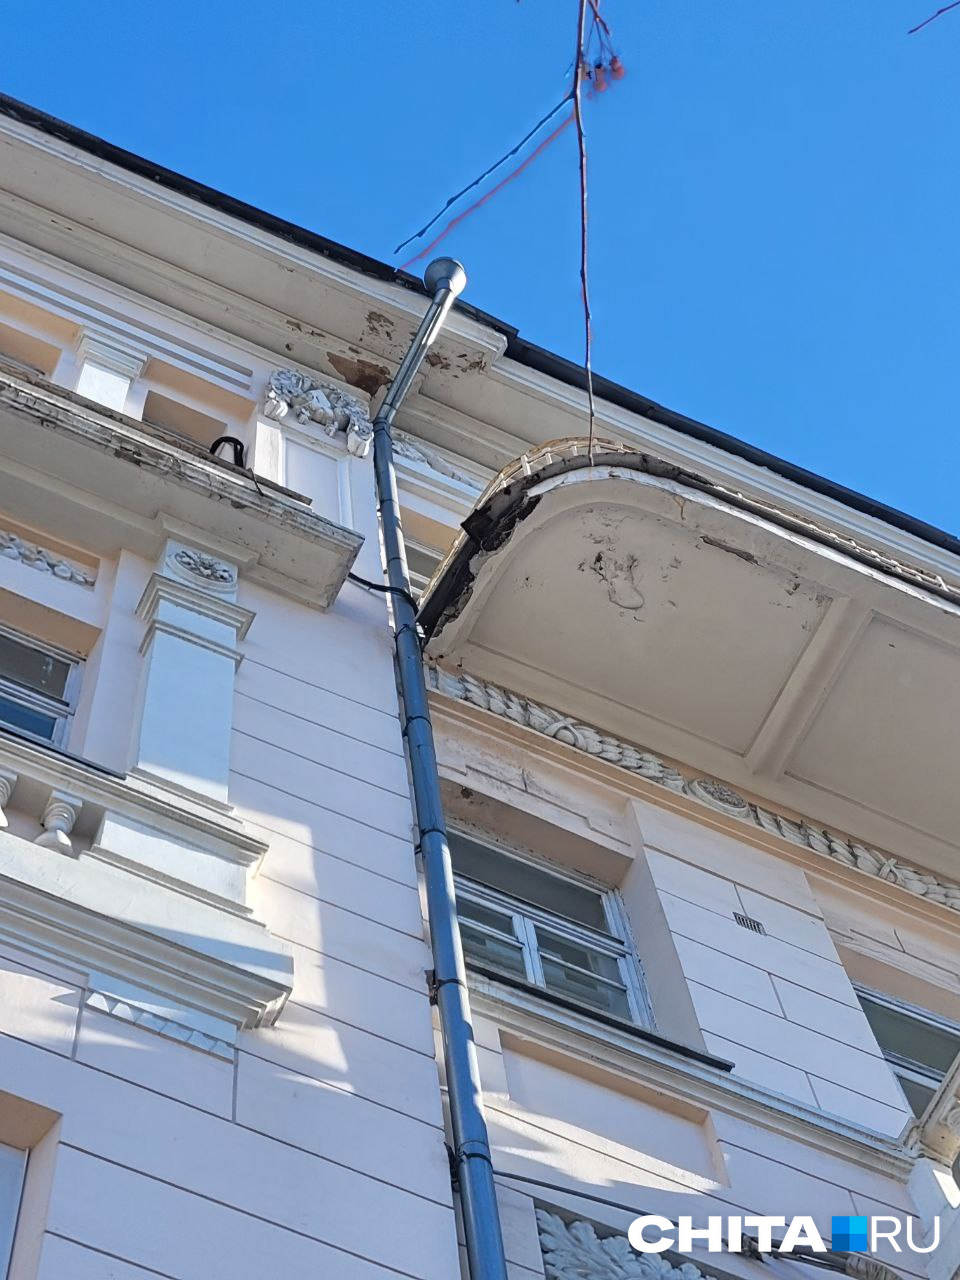 Штукатурка обваливается с балкона правительственного здания в Чите